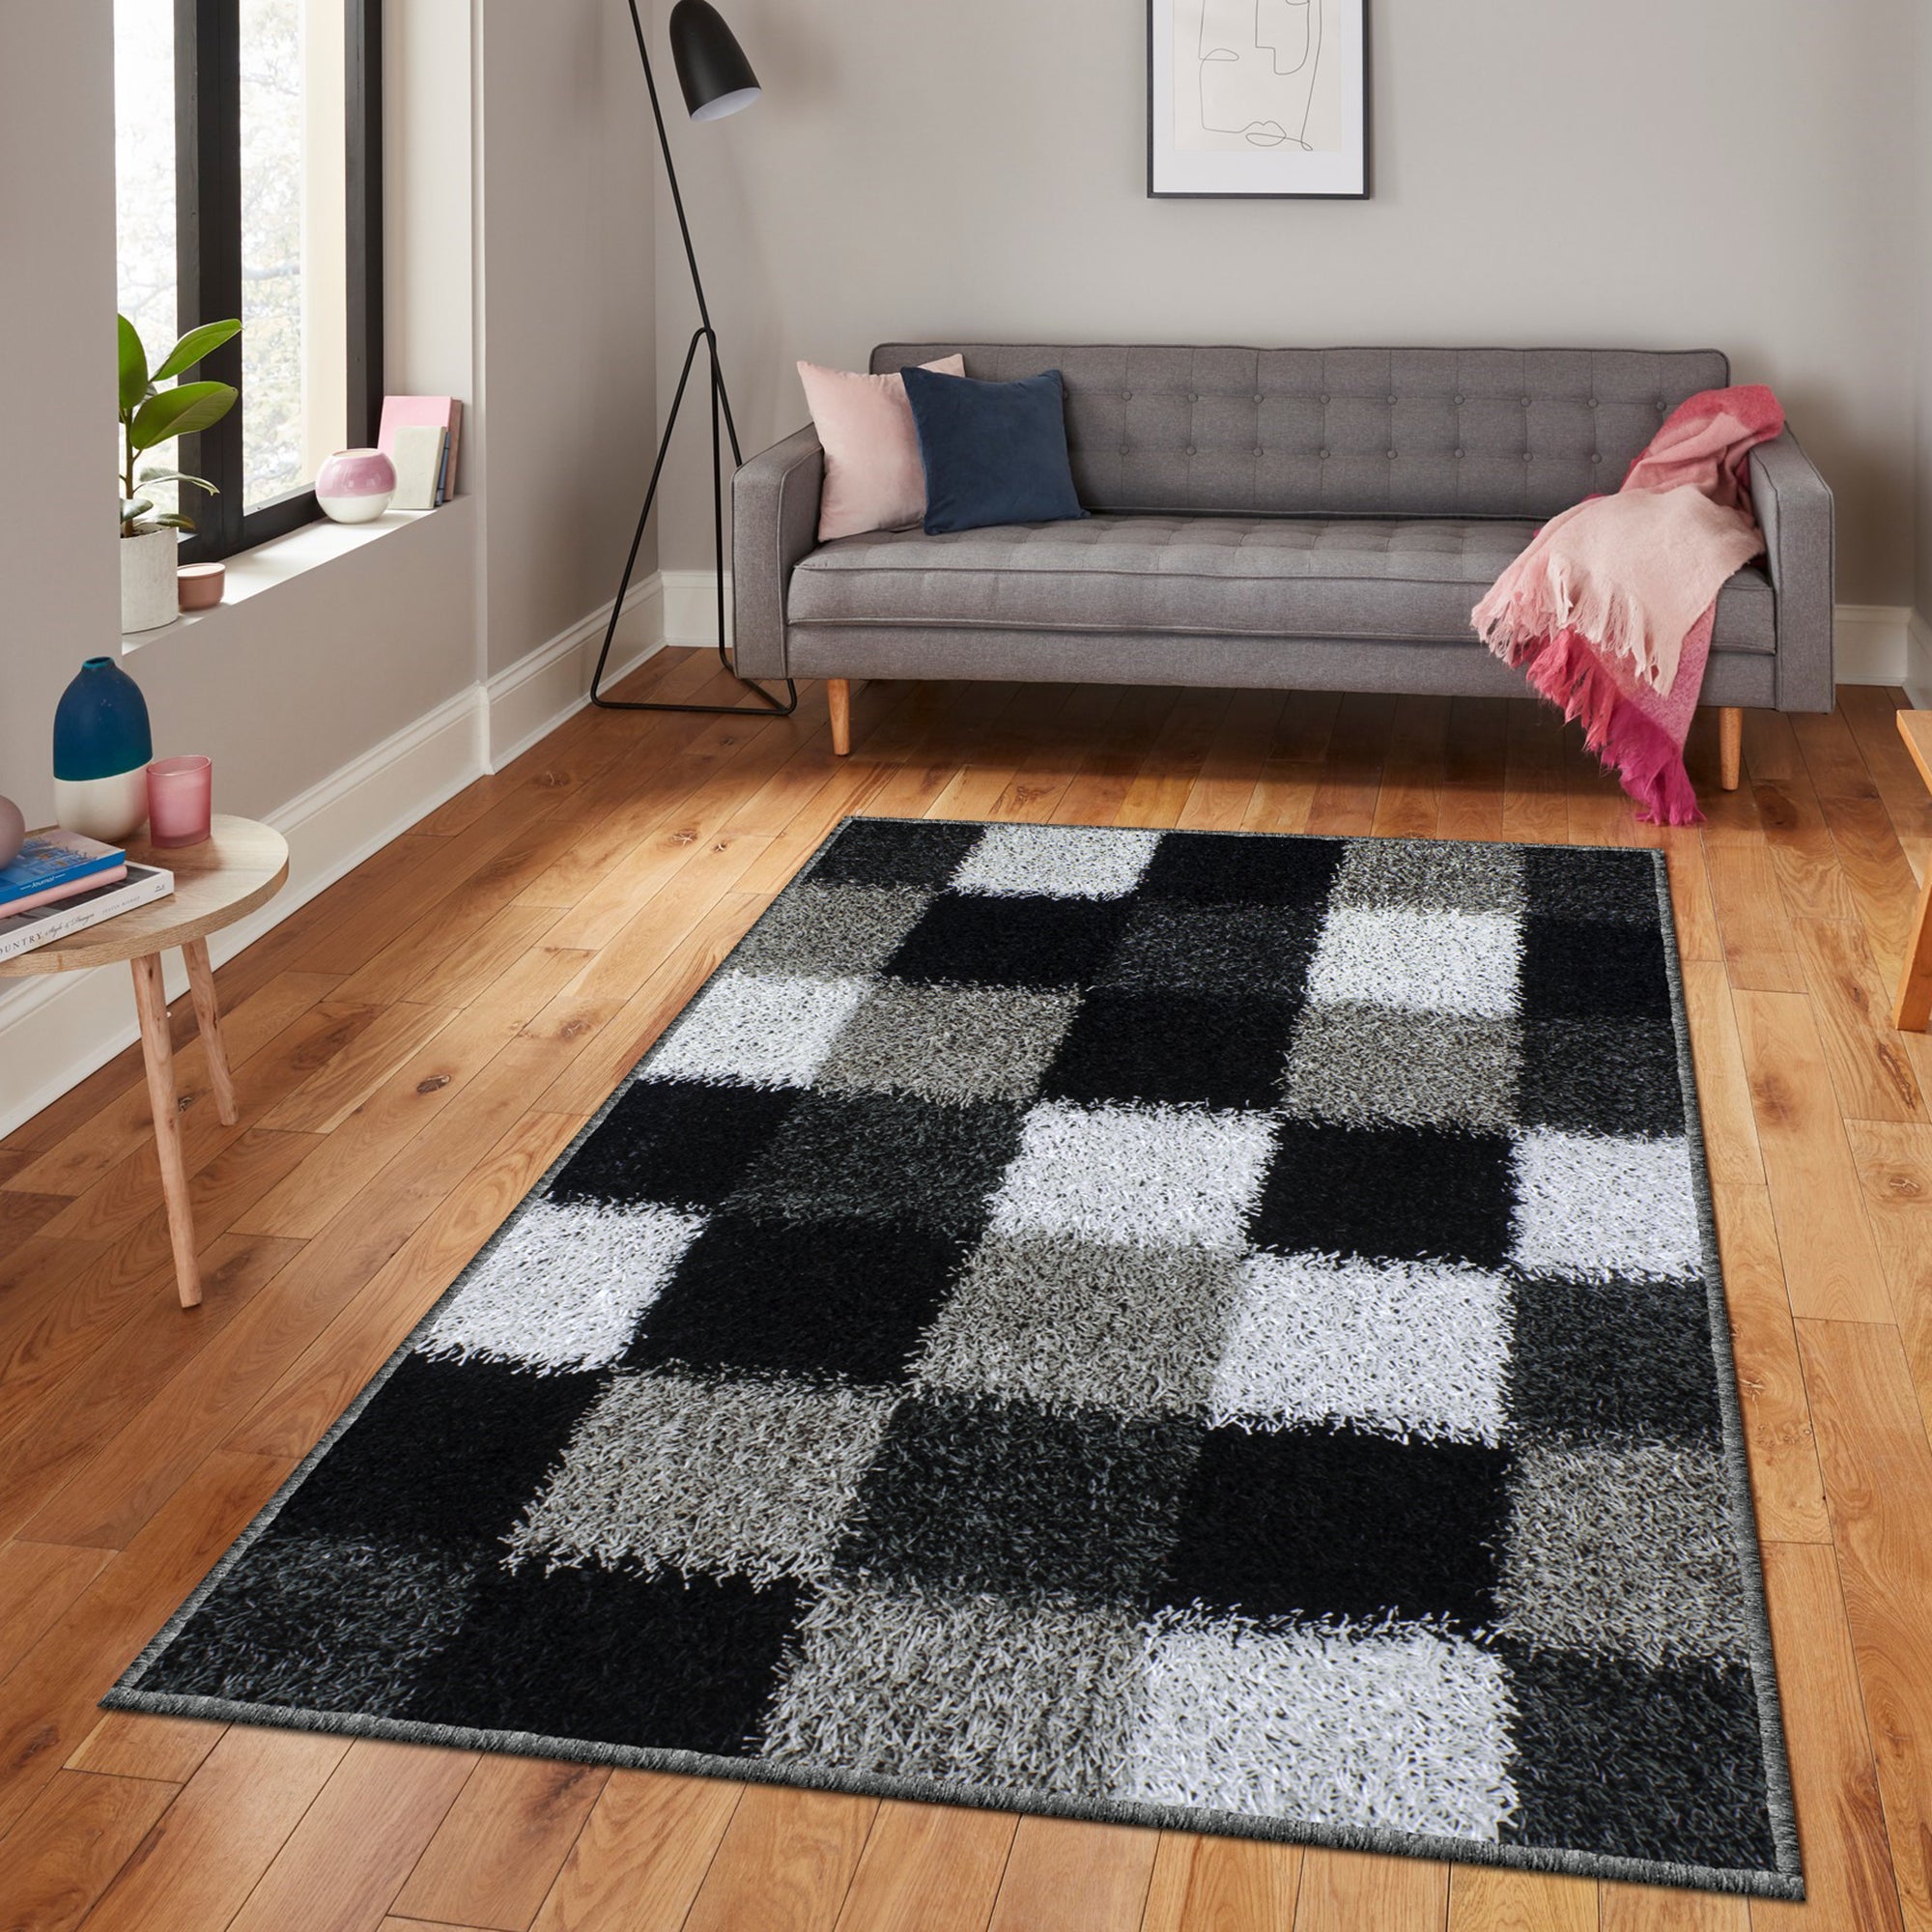 Story@Home Checks Pattern Black & white 1 PC Carpet